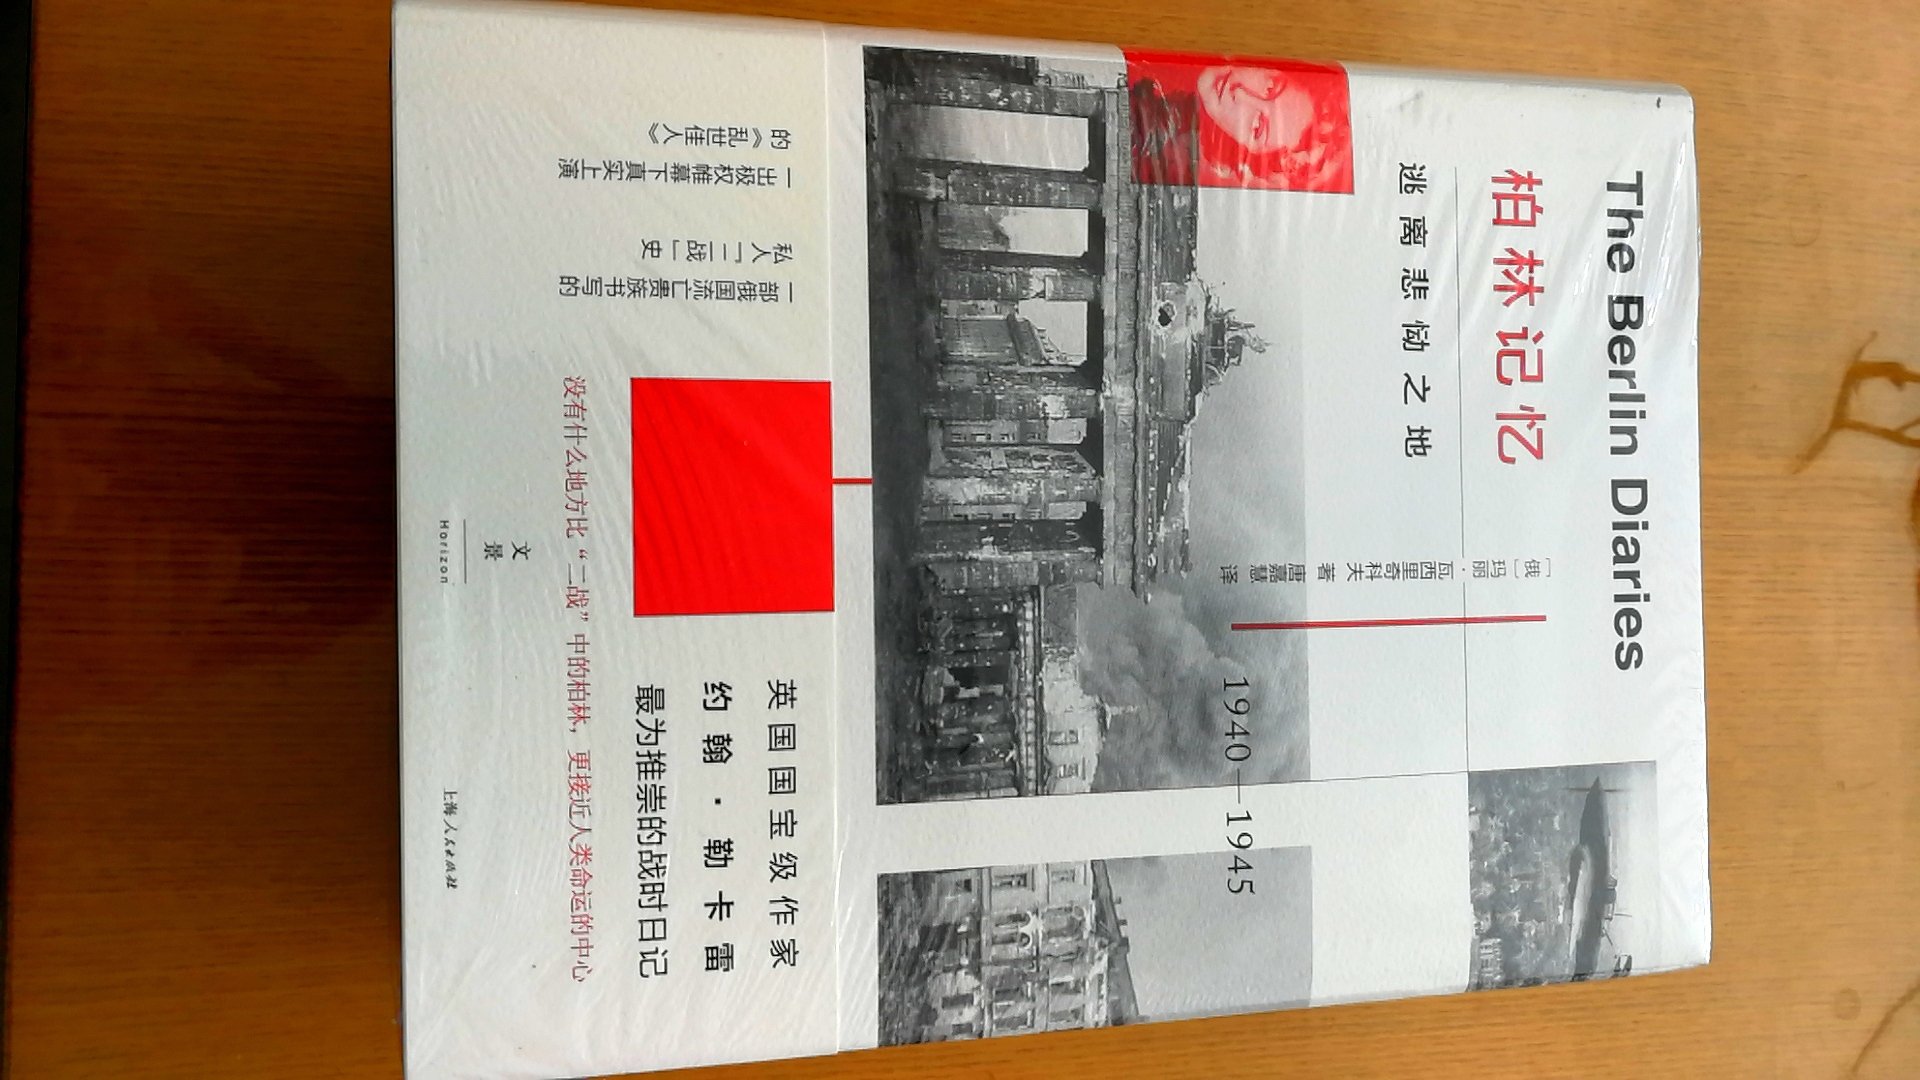 上海人民出版社出版的瓦西里奇科夫作品，精装16开，书脊锁线纸质优良，排版印刷得体大方，活动期间价格实惠，送货速度快，非常满意。